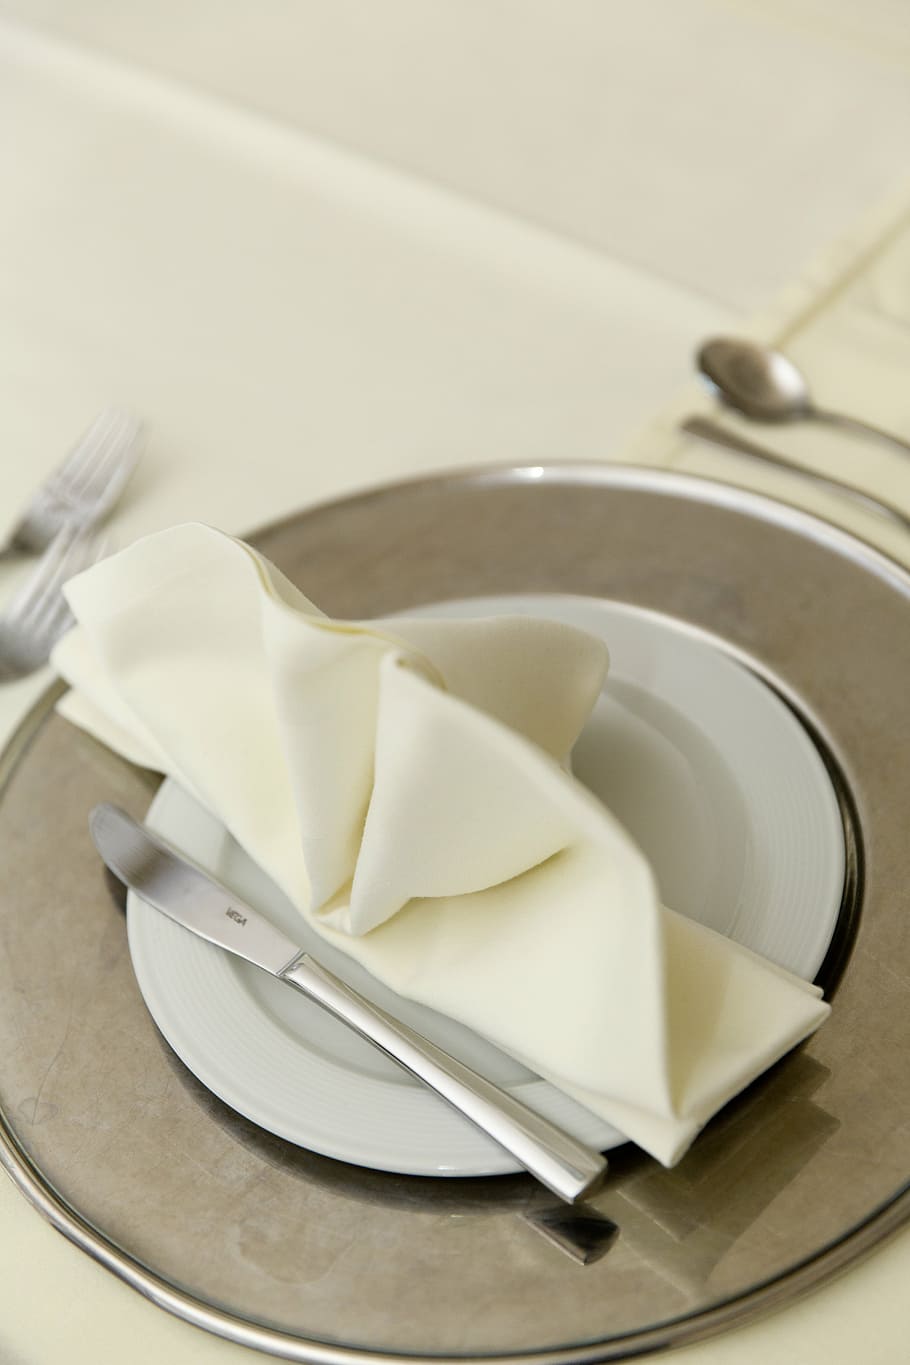 silver knife, white, ceramic, plate, table, setup, restaurant, napkin, knife, tableware